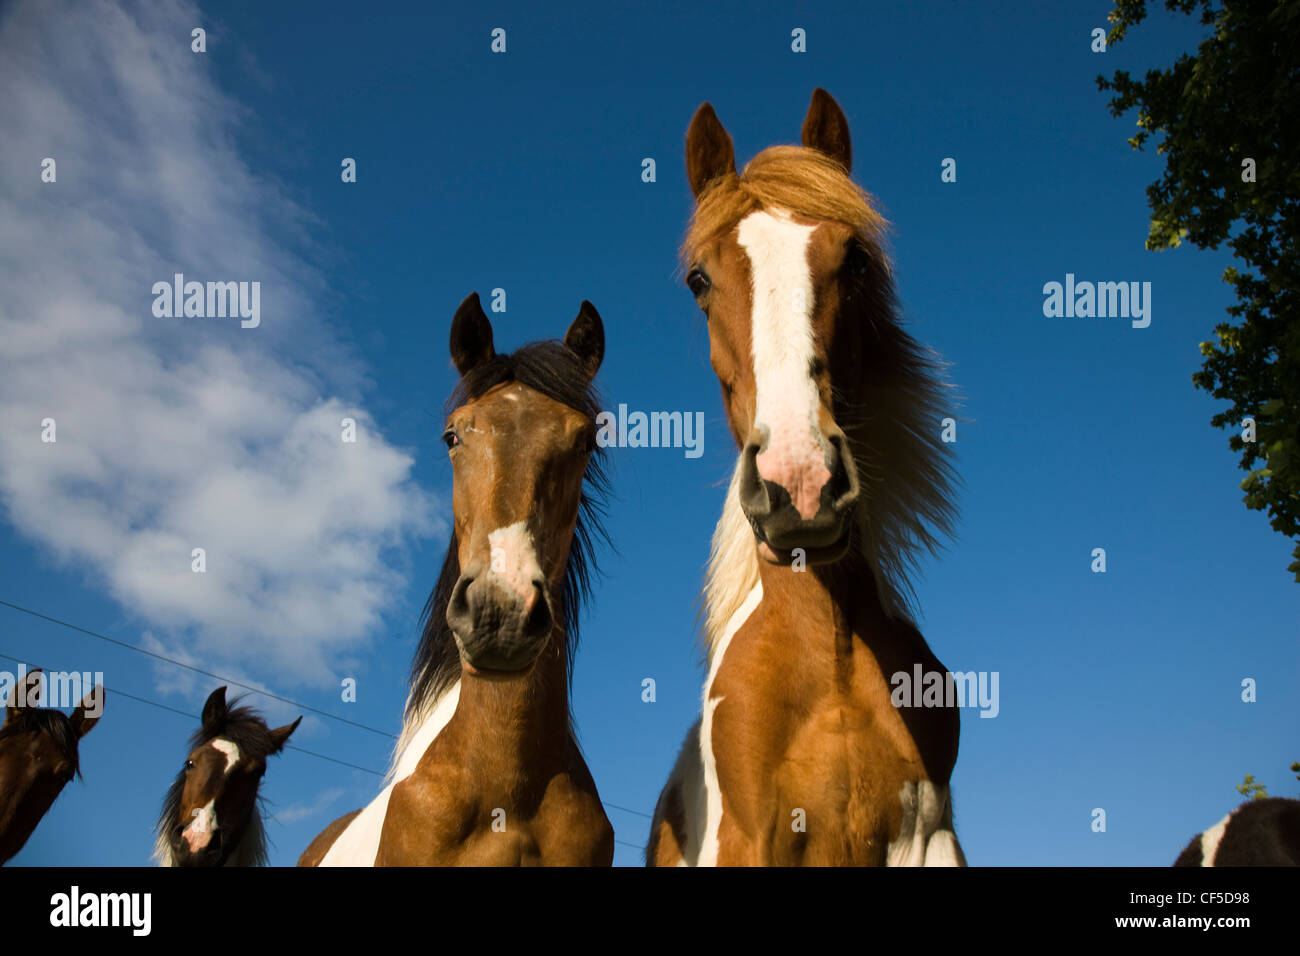 Curioso caballos de amplio ángulo de vista desde abajo Foto de stock